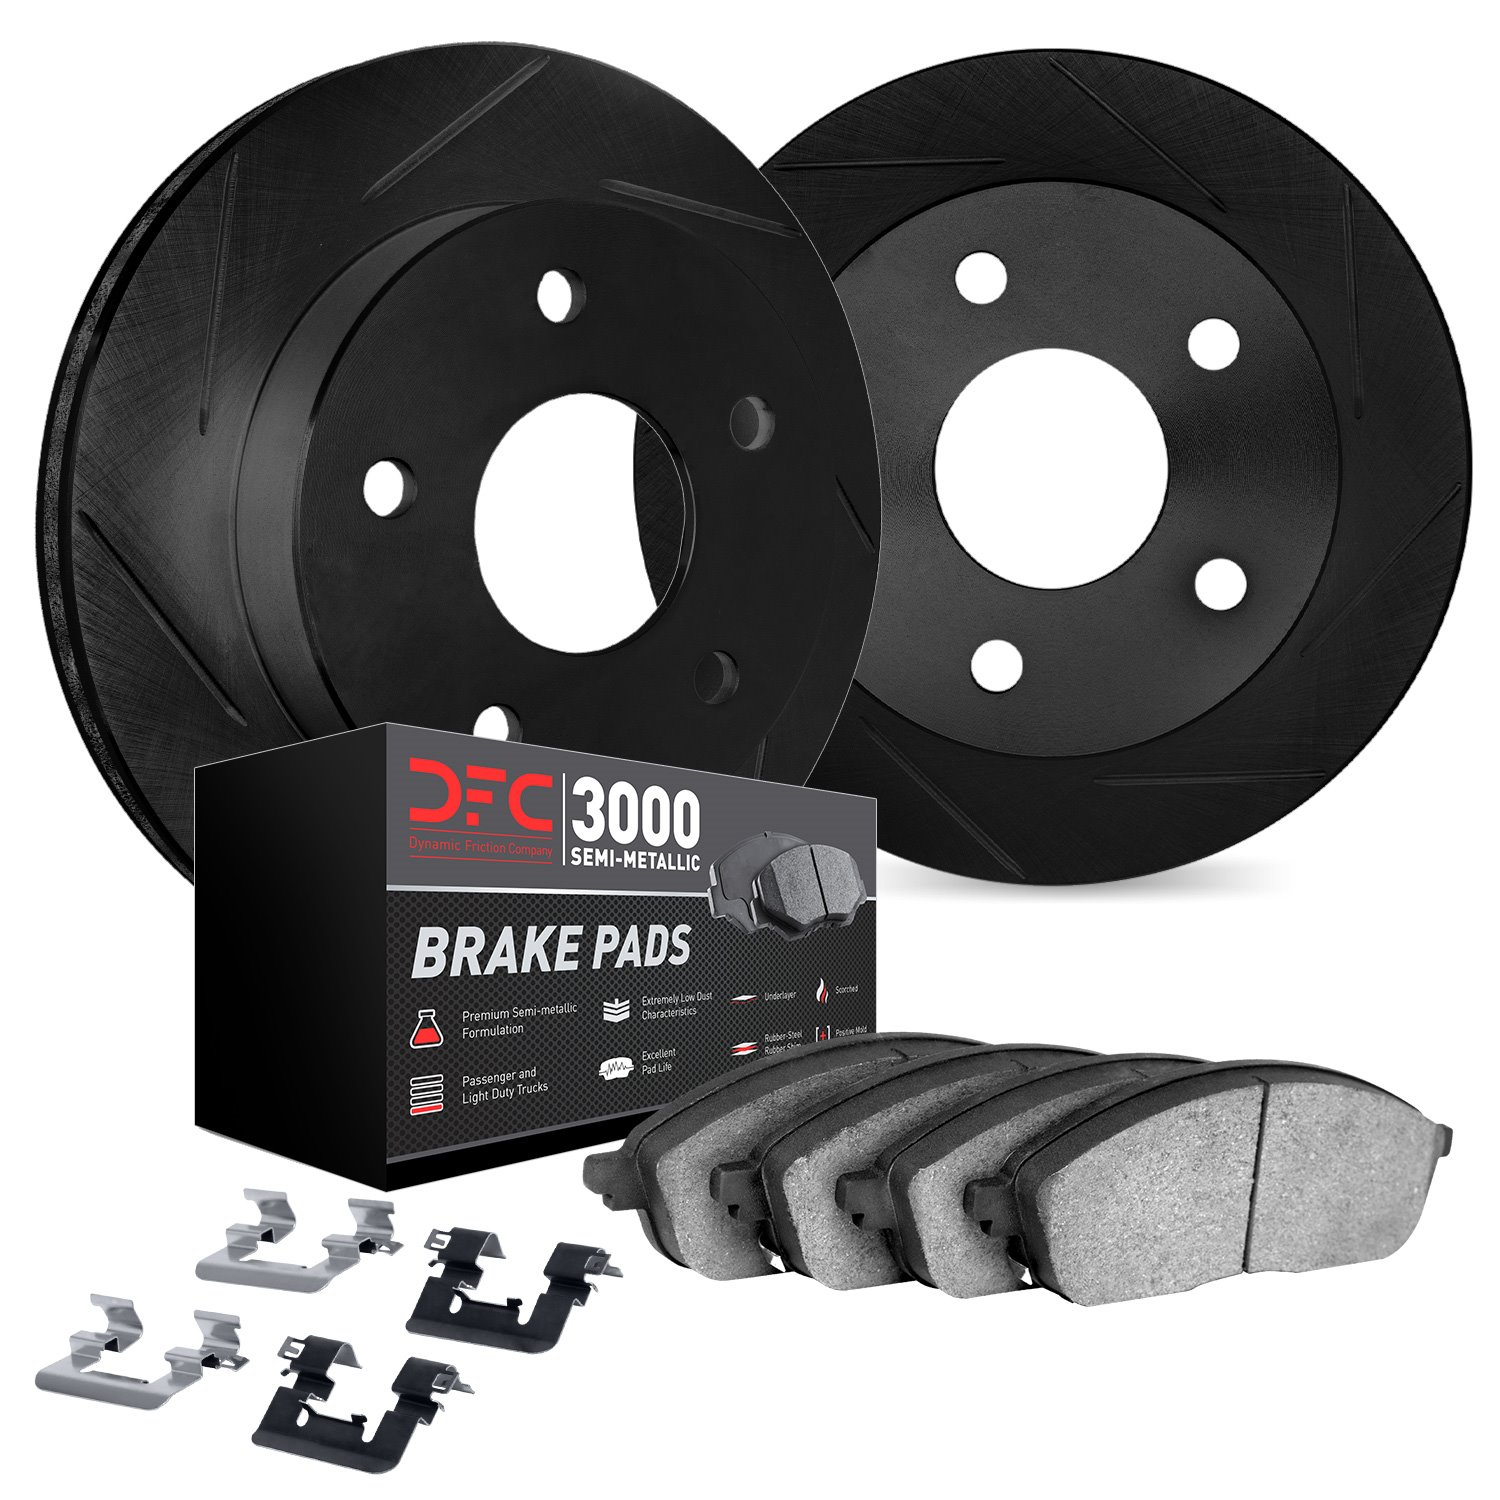 3112-76168 Slotted Brake Rotors with 3000-Series Semi-Metallic Brake Pads Kit & Hardware [Black], 2009-2015 Lexus/Toyota/Scion,